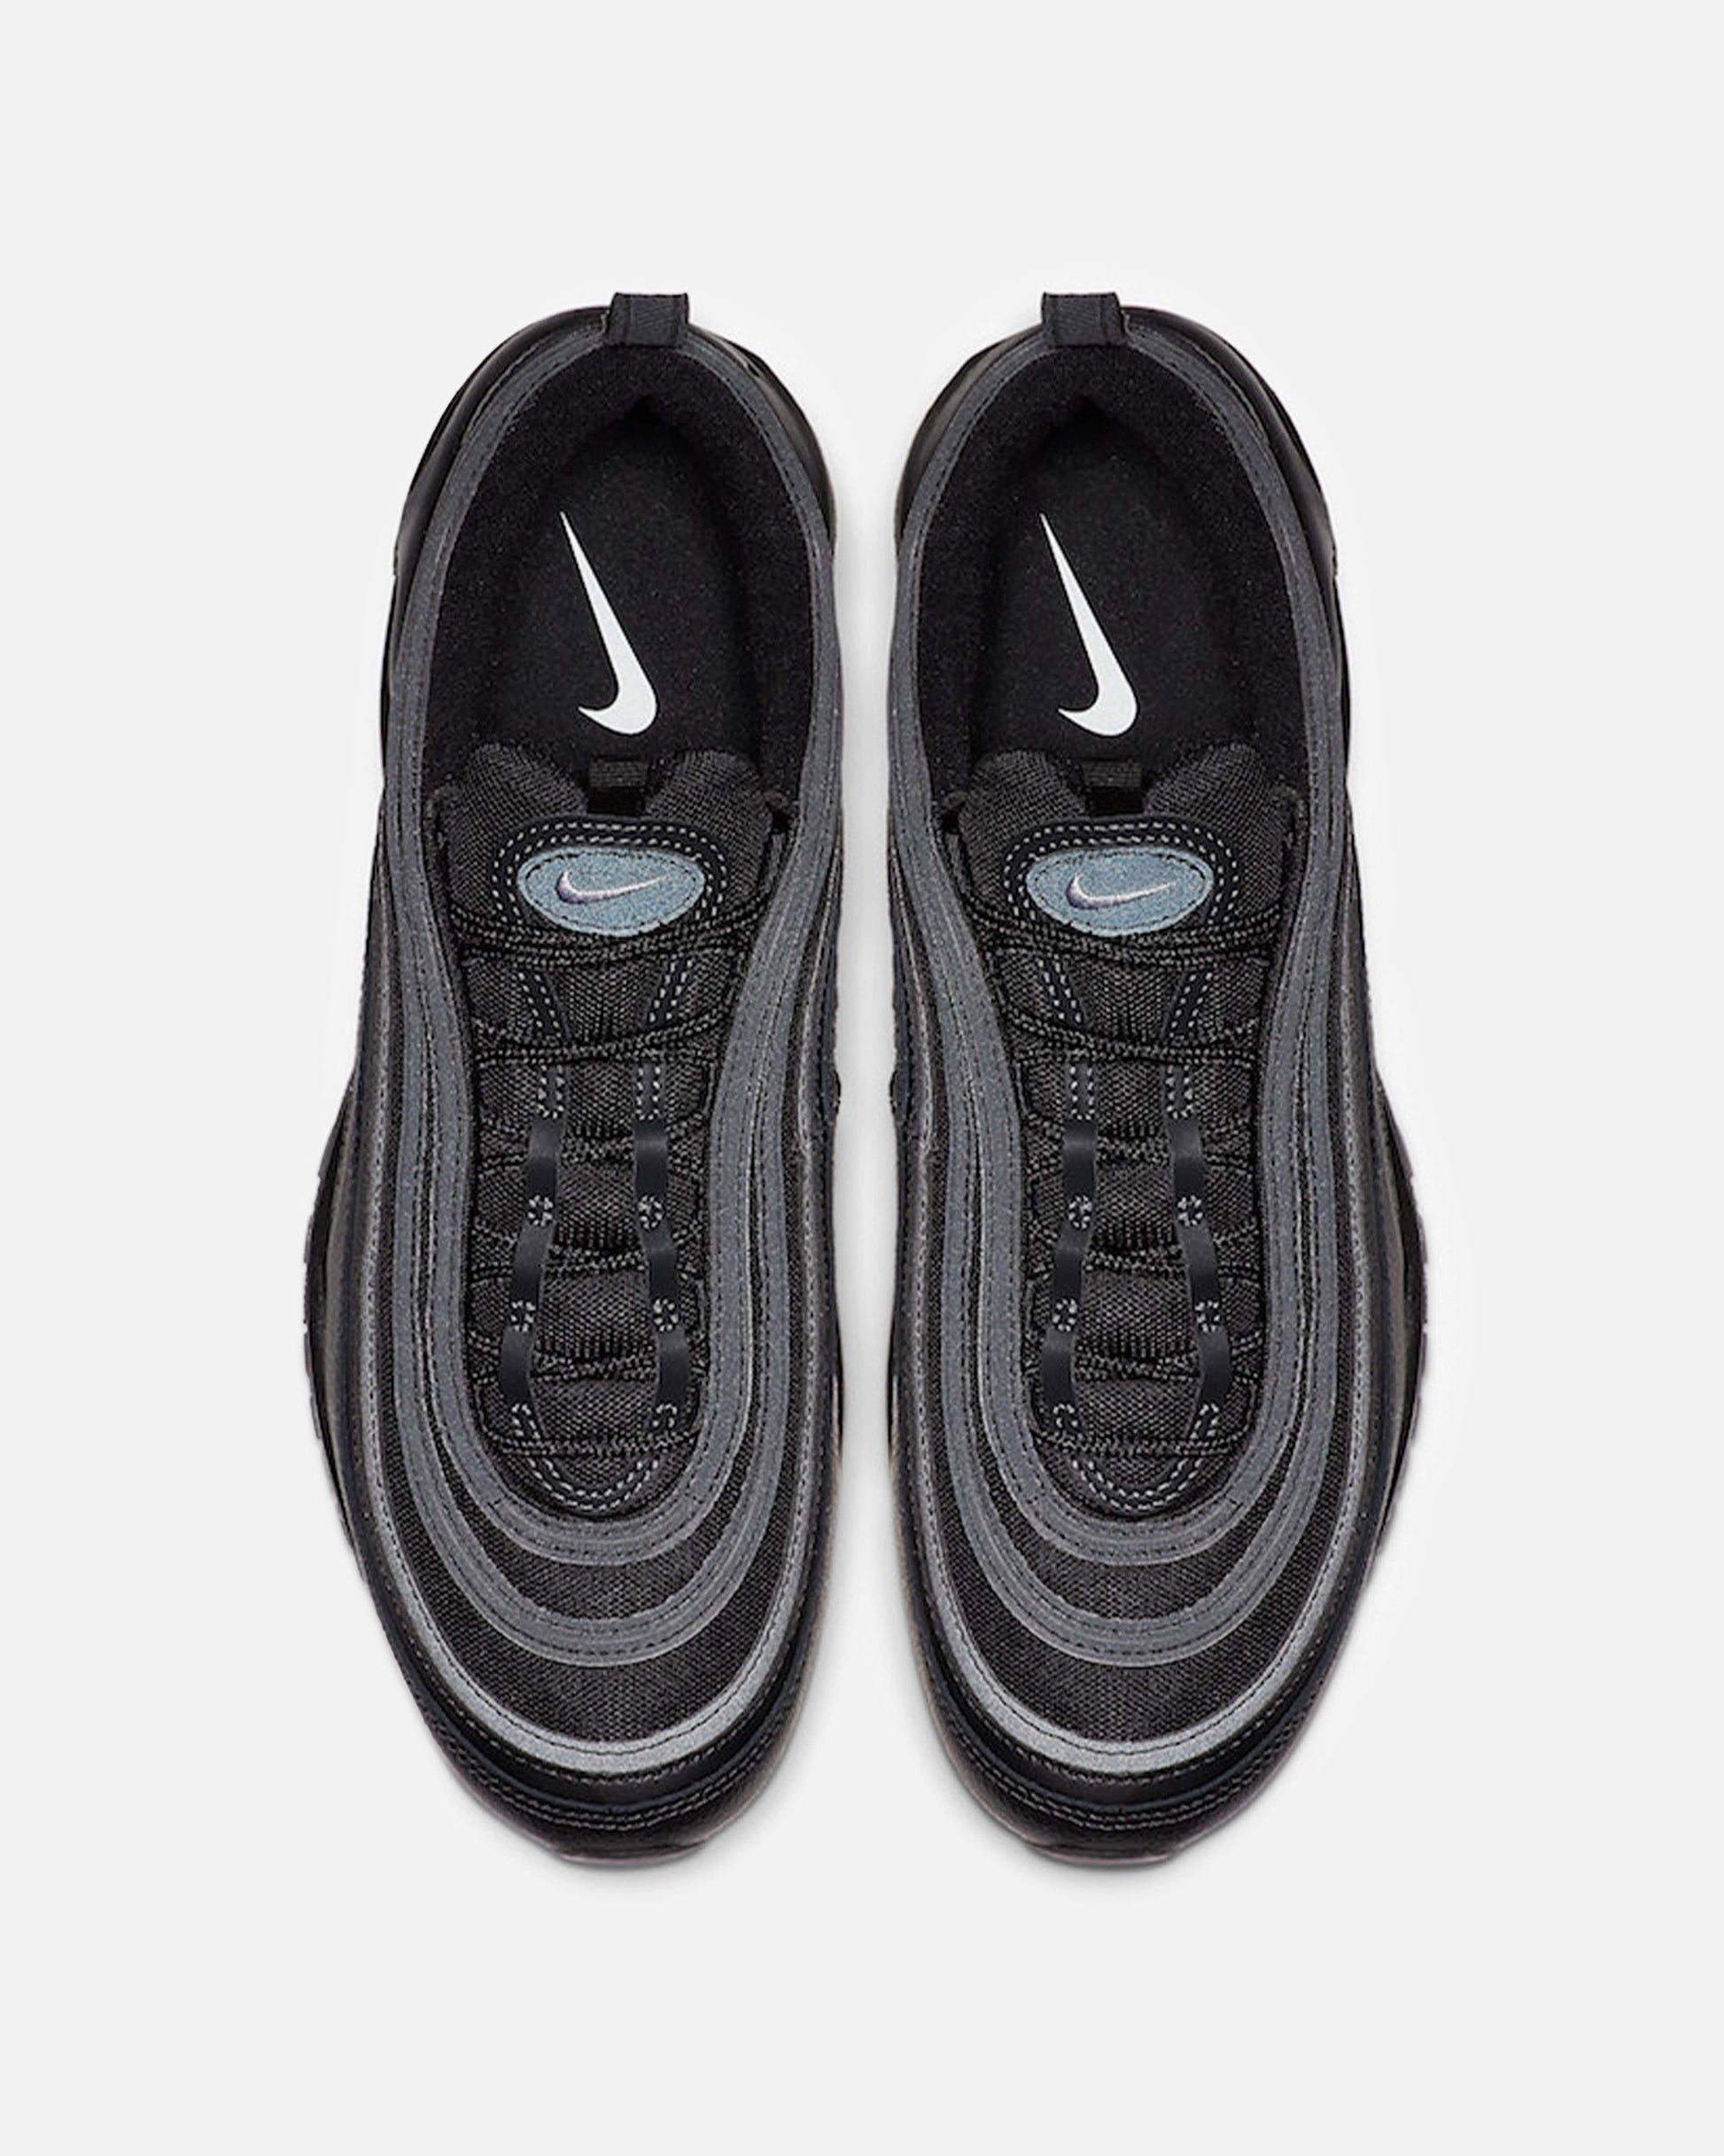 Nike Men's Sneakers Air Max 97 'Black Terry Cloth'